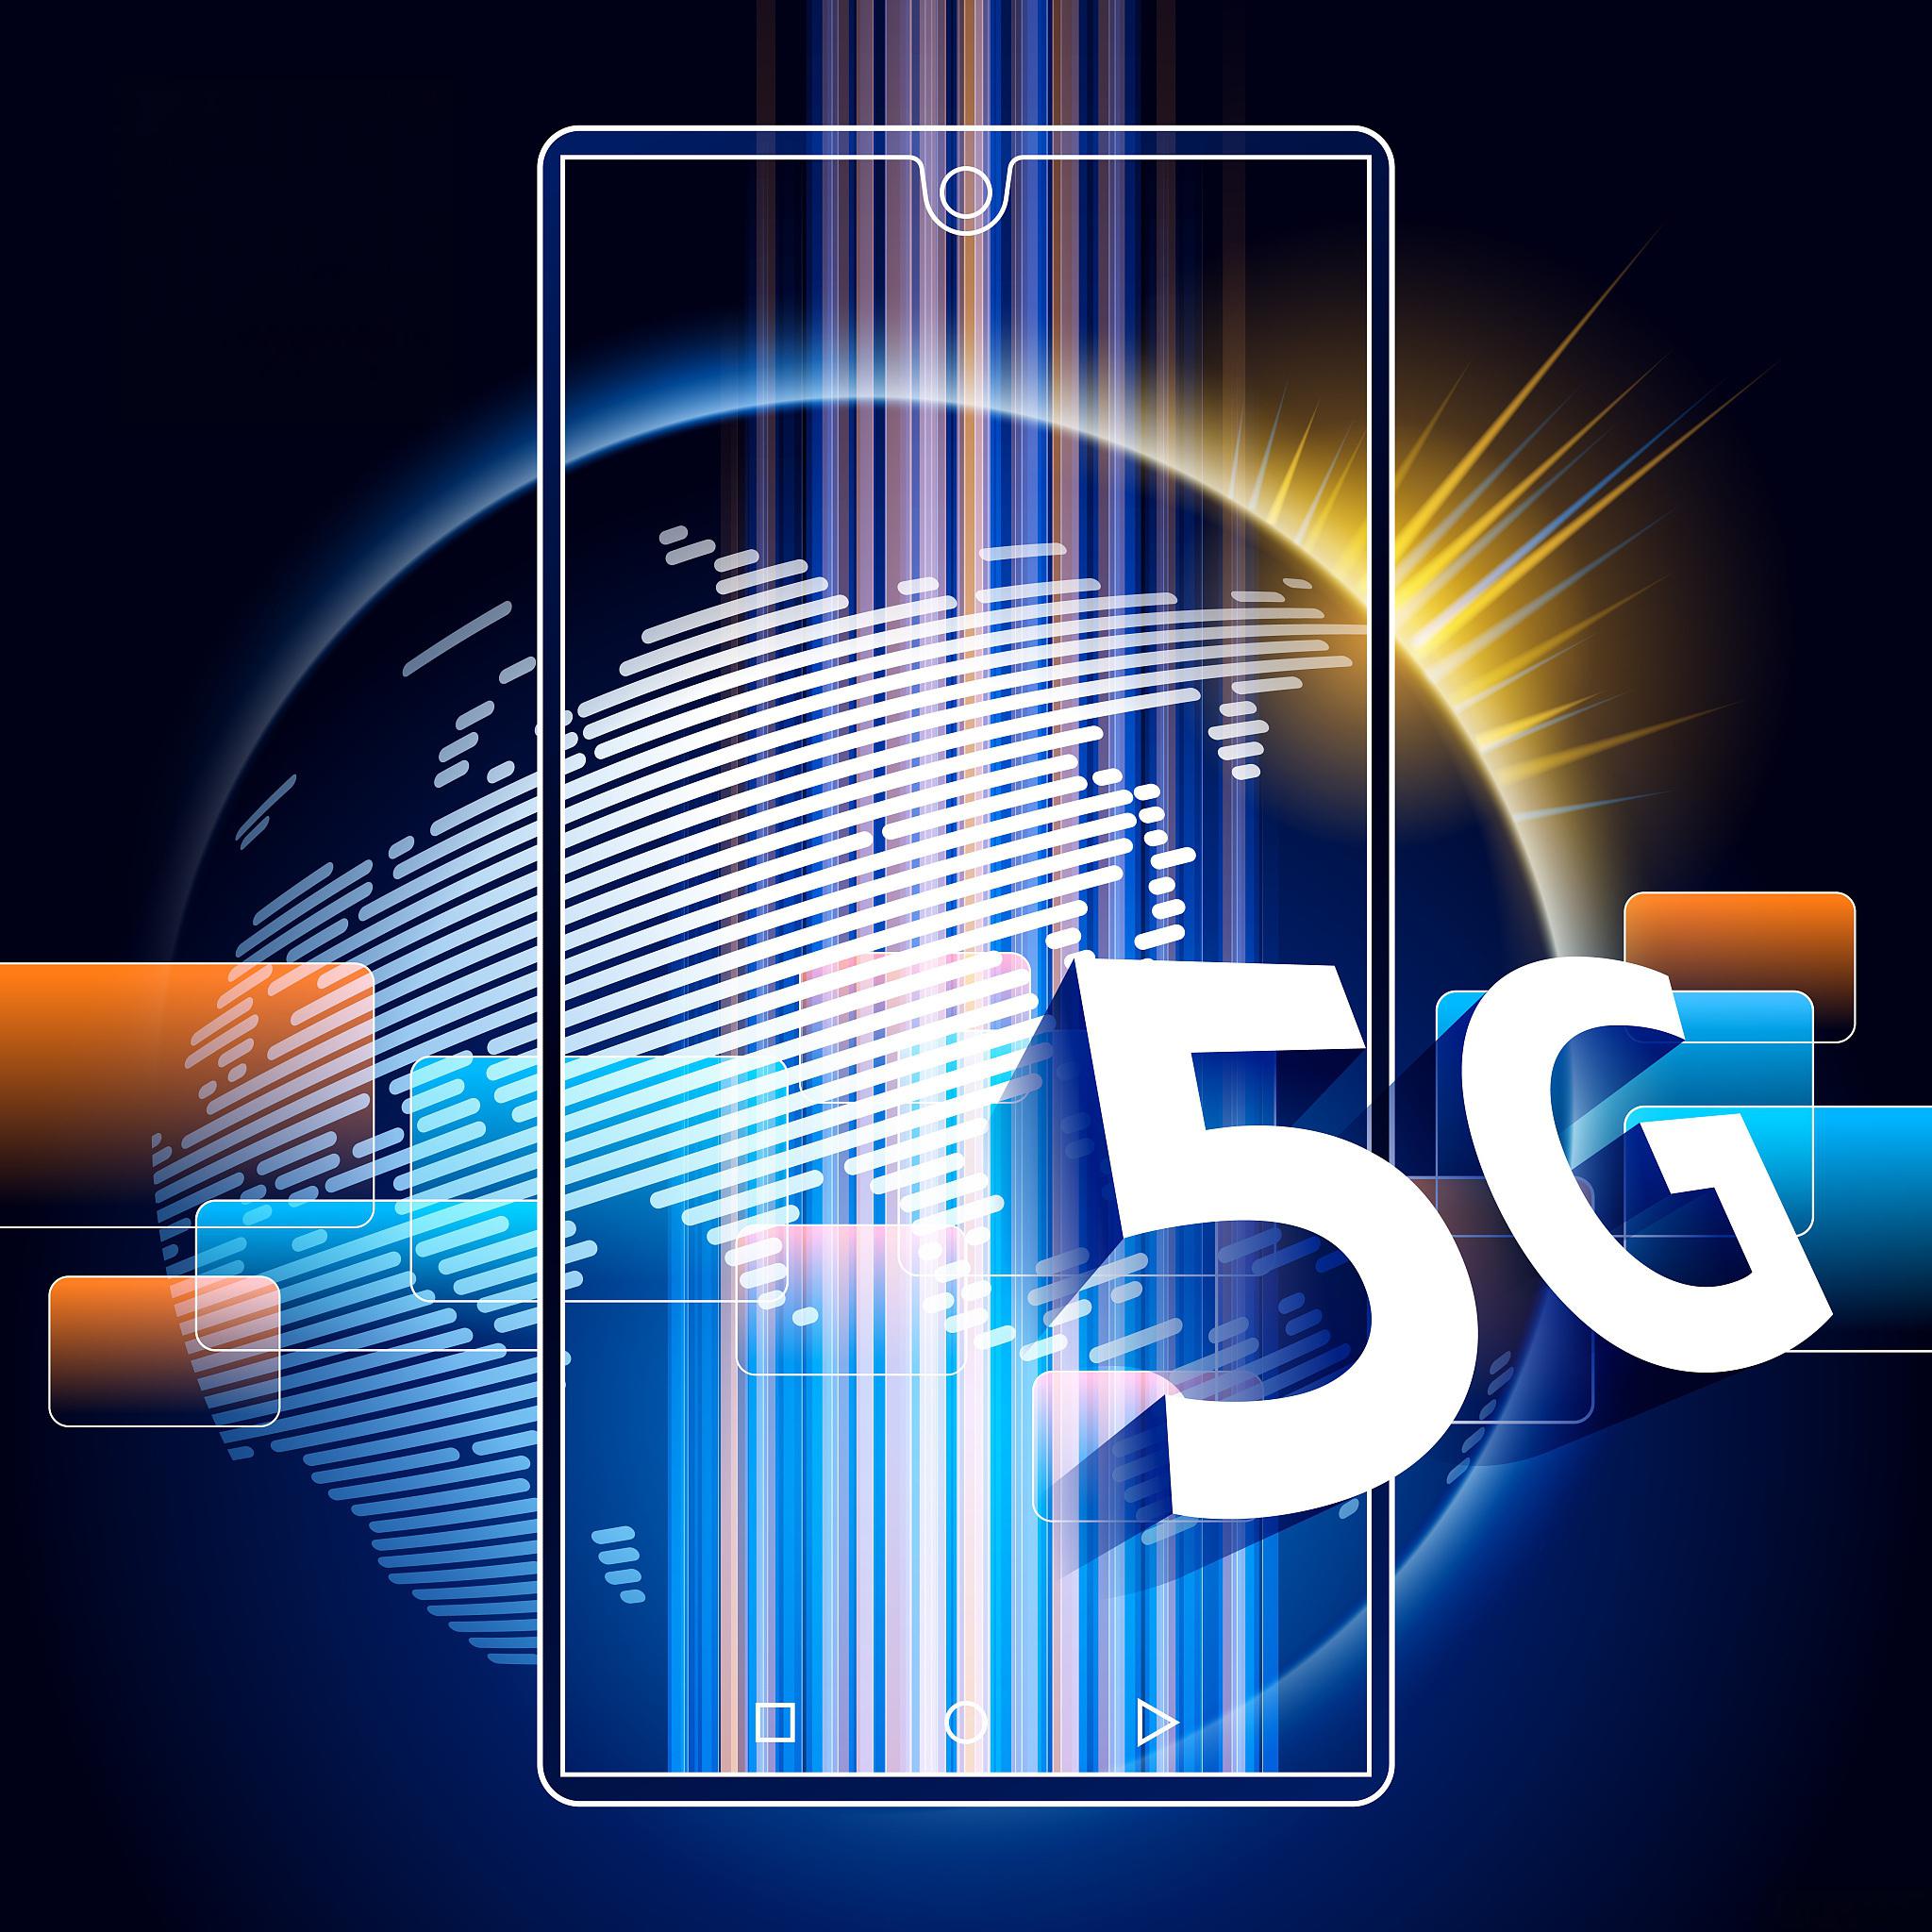 5G 网络：高速传输与低延迟特性将颠覆我们的生活方式  第5张